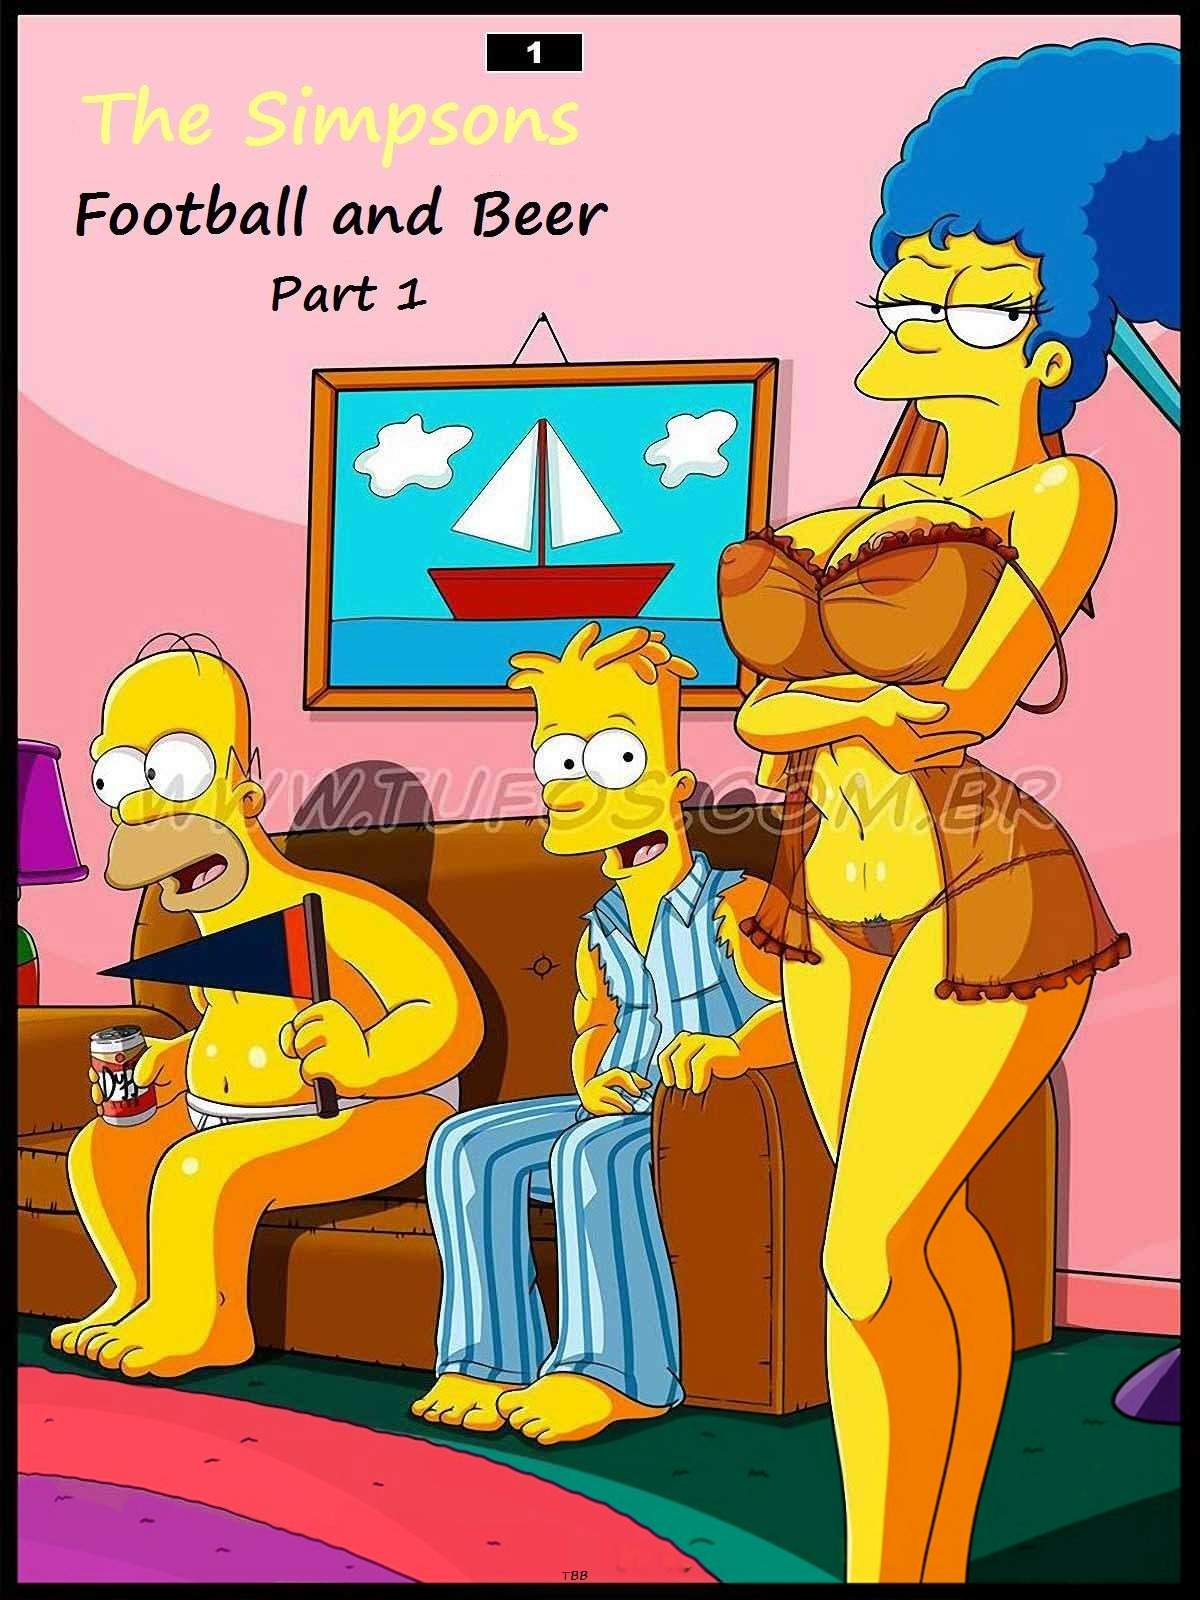 SureFap xxx porno The Simpsons - [Tufos] - Os Simptoons 001 - Futebol E Cerveja - Parte 01